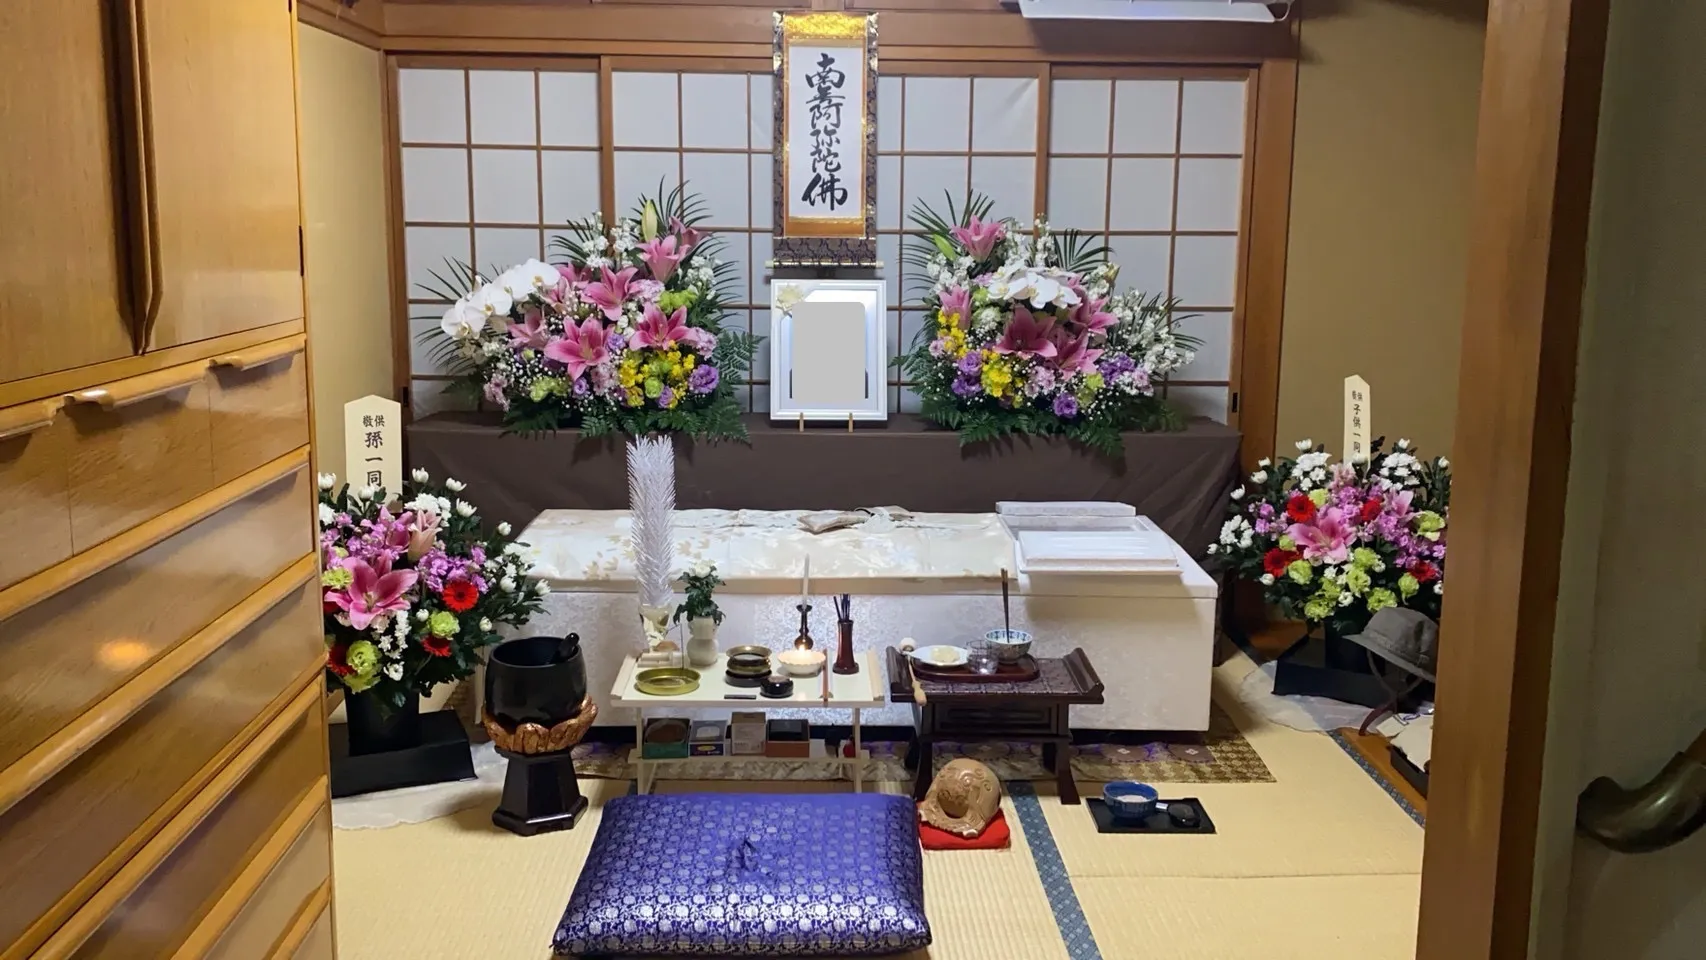 「北九州市門司区」自宅で家族葬を執り行いました